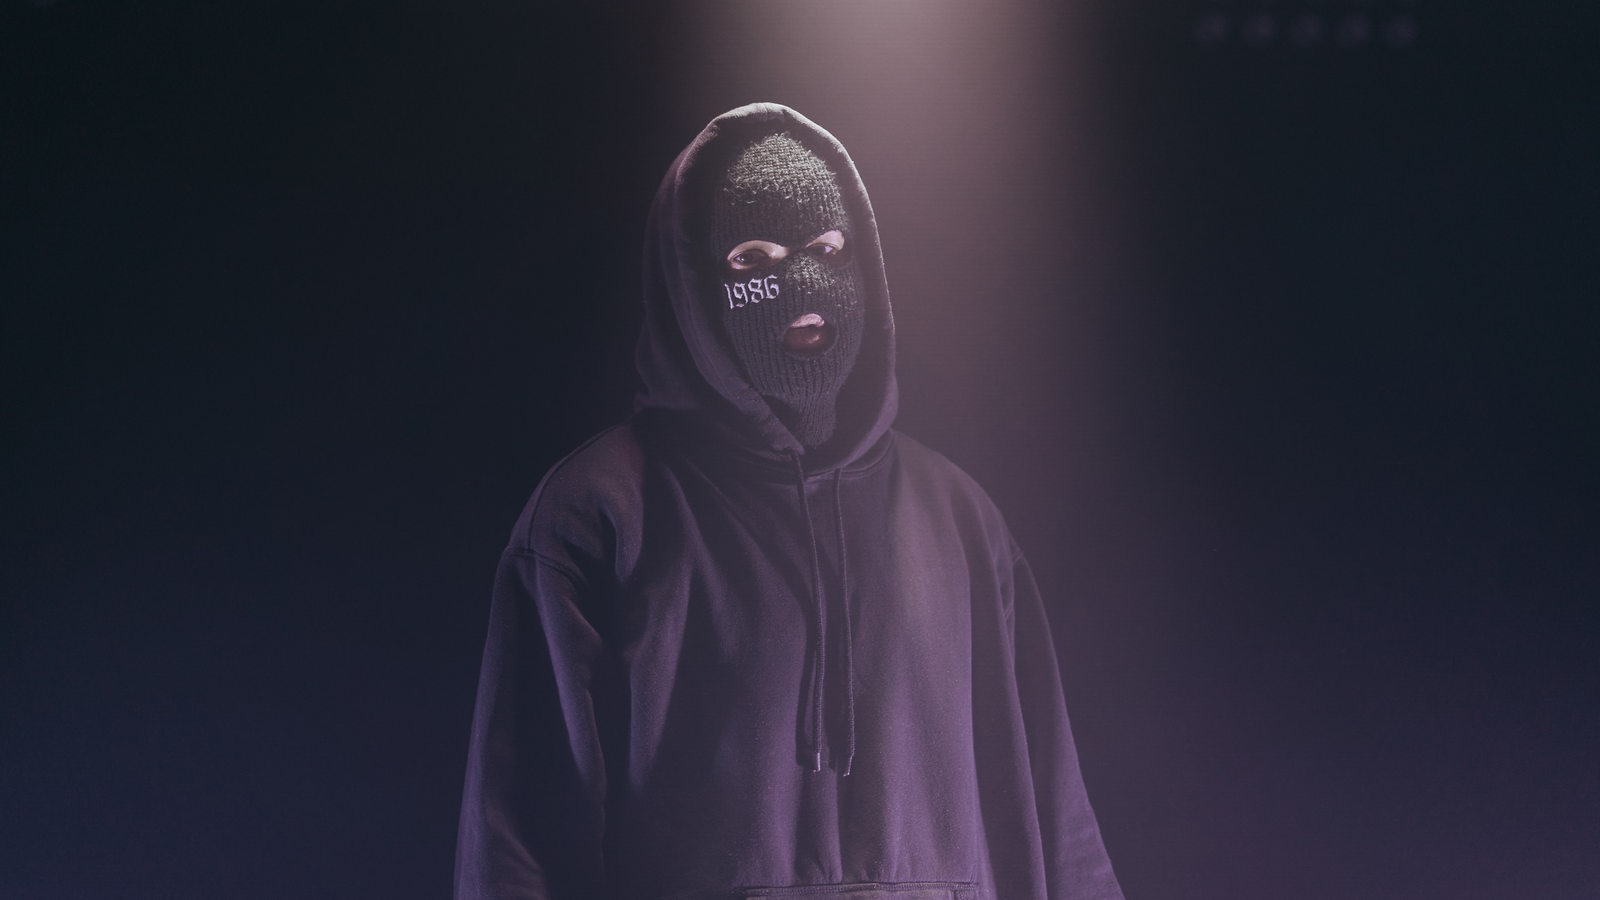 Der Künstler steht mit seiner Sturmmaske im Kapuzenhoodie vor der Kamera. Der Hintergrund ist dunkles lila, er wird von oben mit Licht sanft angestrahlt und blickt durch die Maske hindurch in die Kamera.